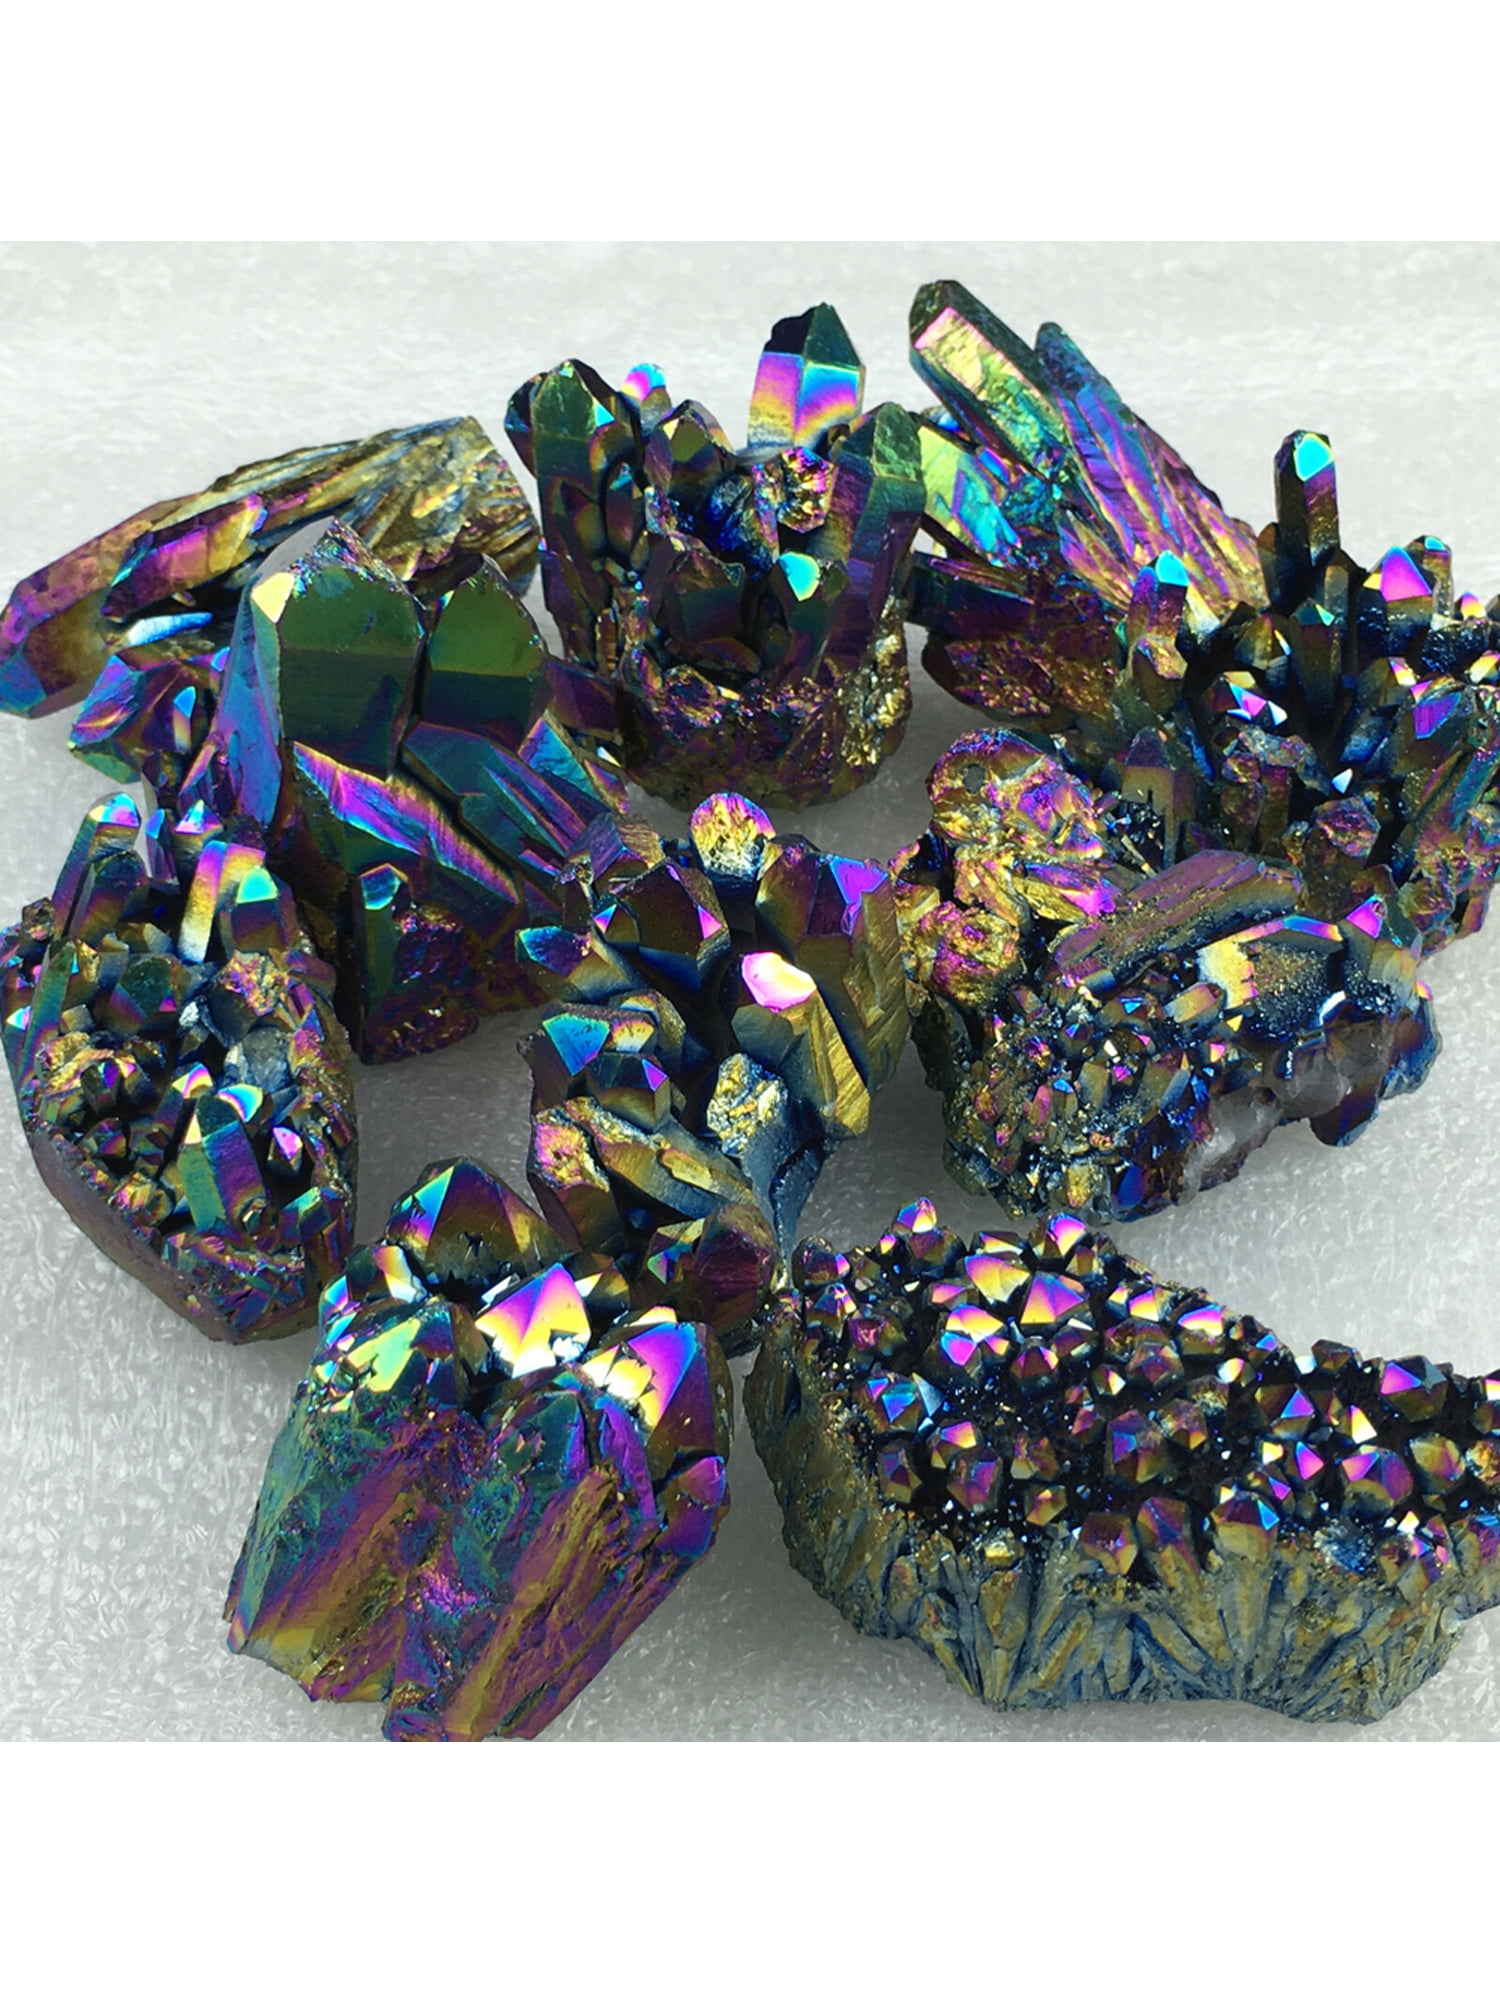 Details about   1PCS Natural Quartz Crystal Rainbow Titanium Cluster Mineral Specimen Healing 